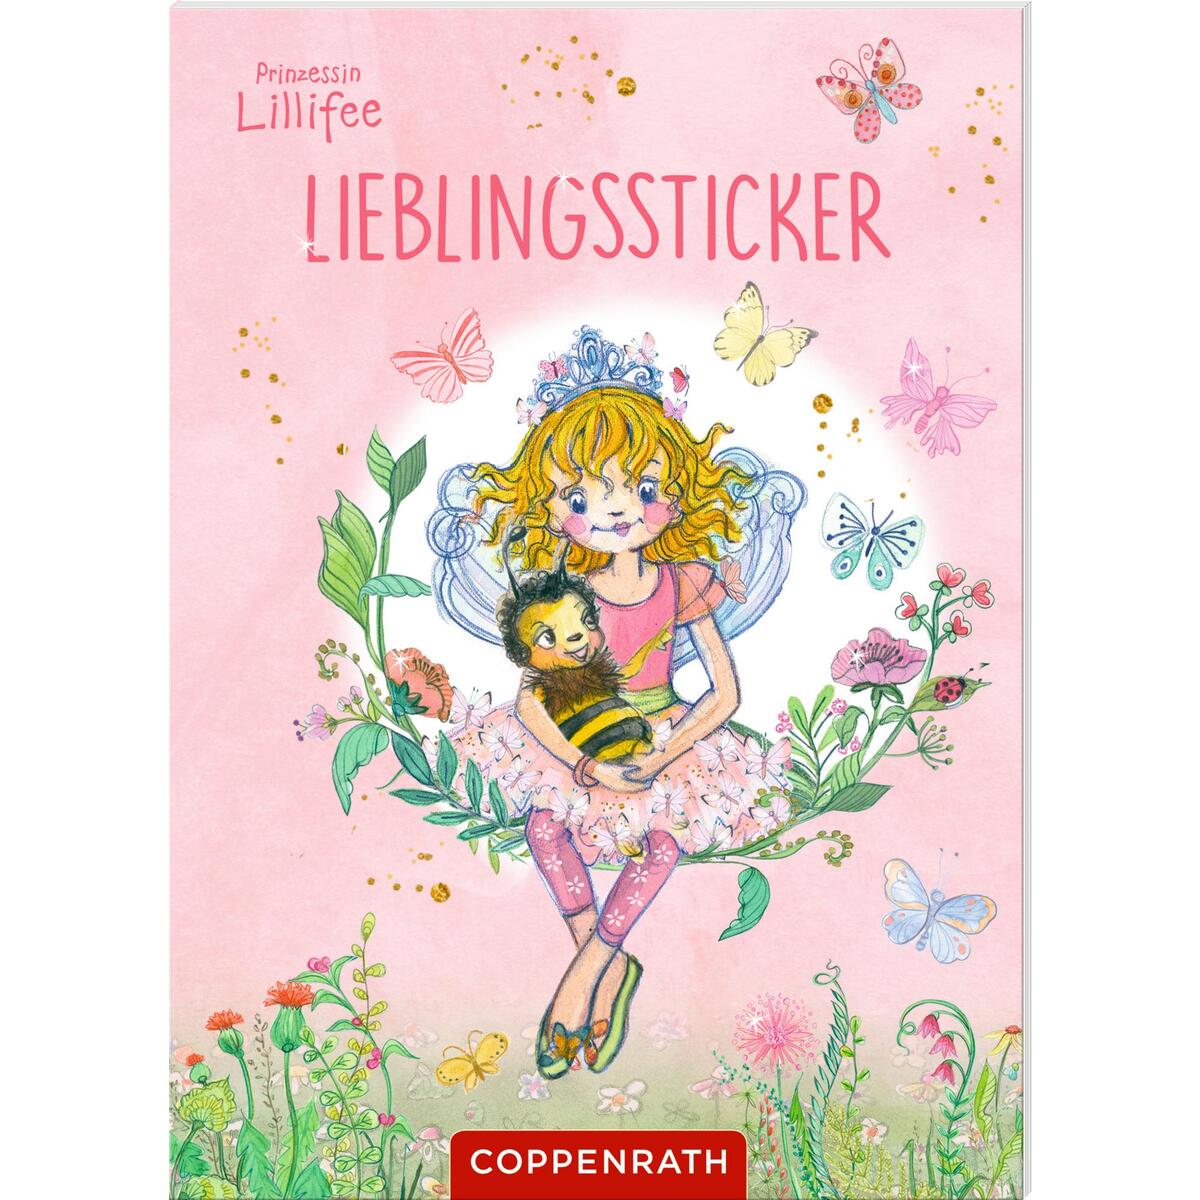 Lieblingssticker (Prinzessin Lillifee) von Coppenrath F